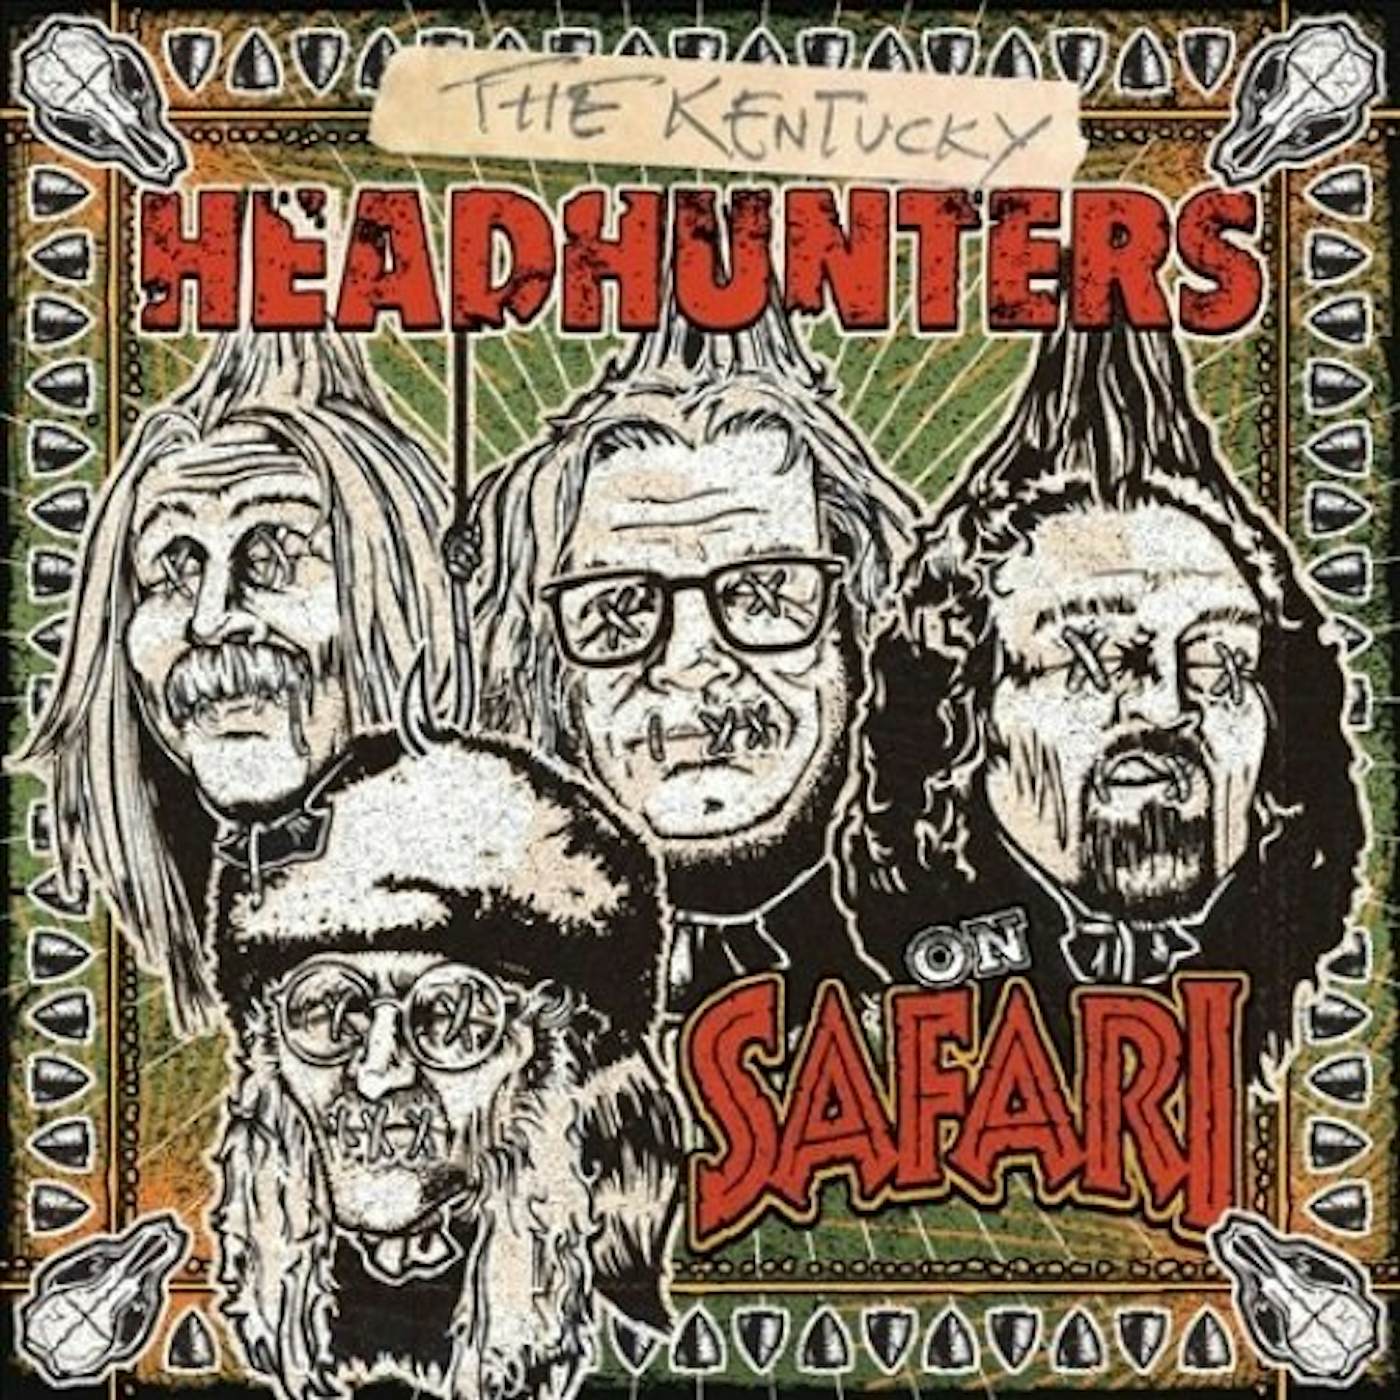 The Kentucky Headhunters On Safari Vinyl Record